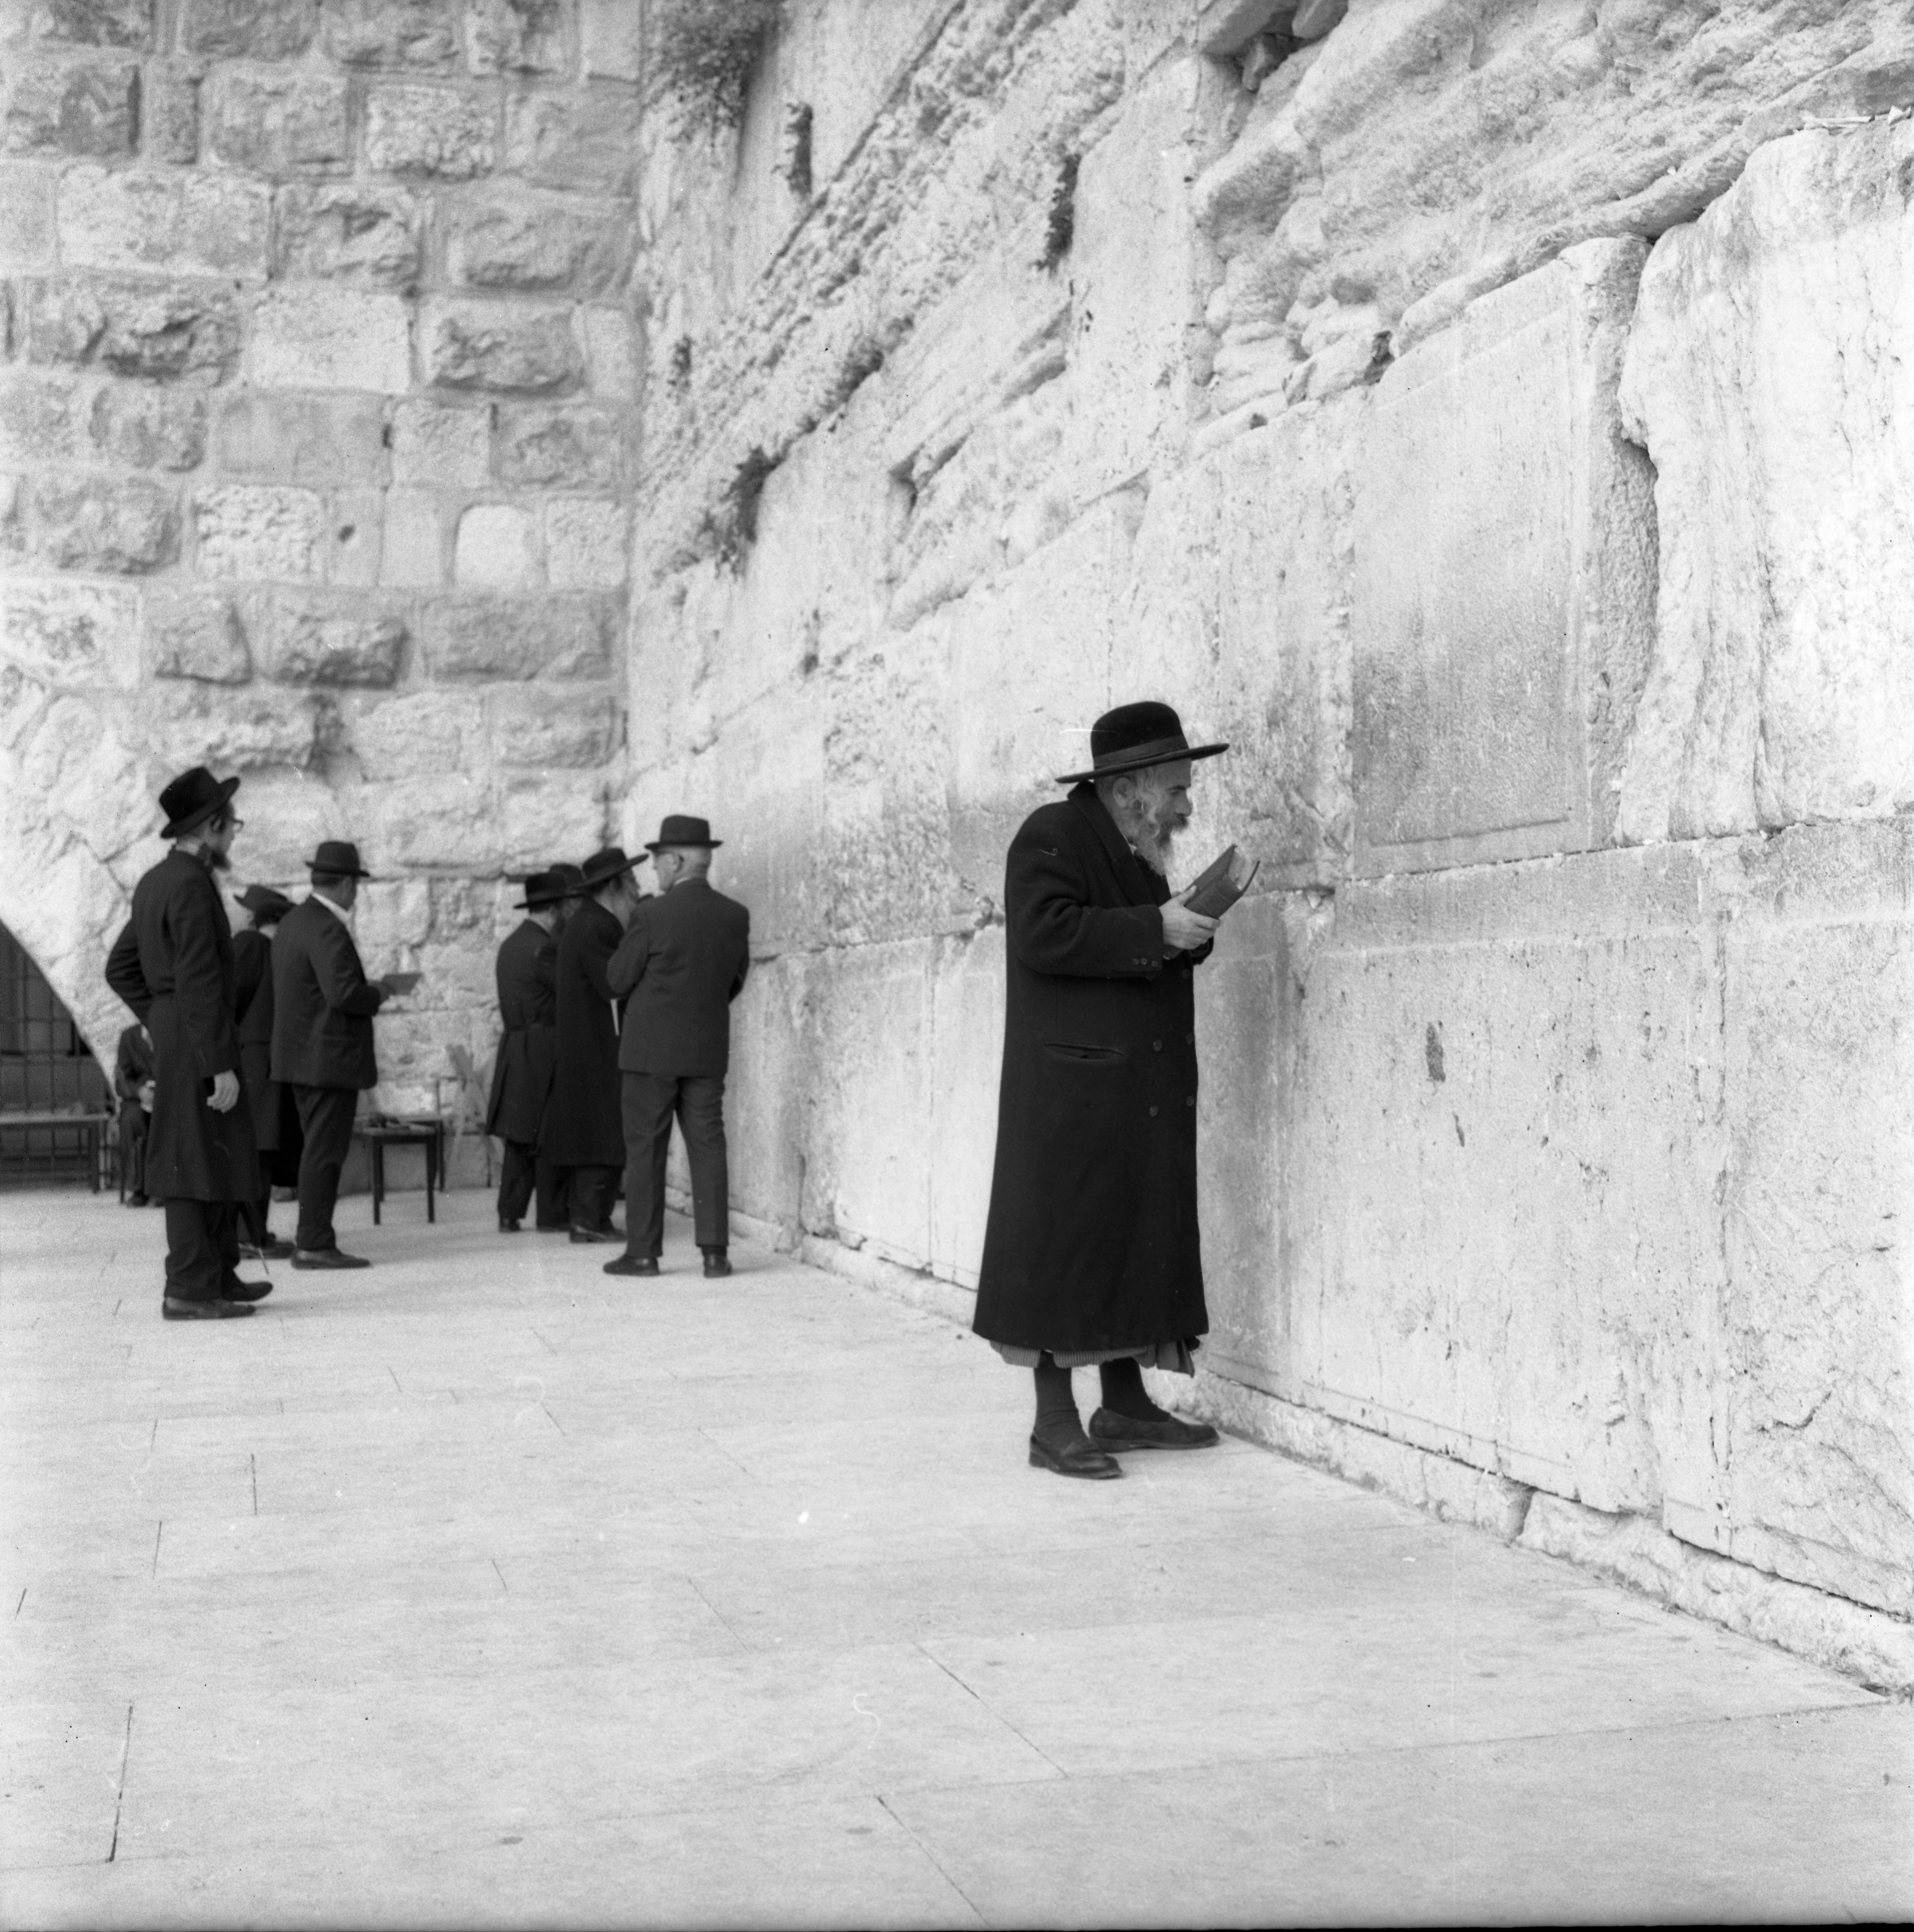  חופש בירושלים, נובמבר; 1971